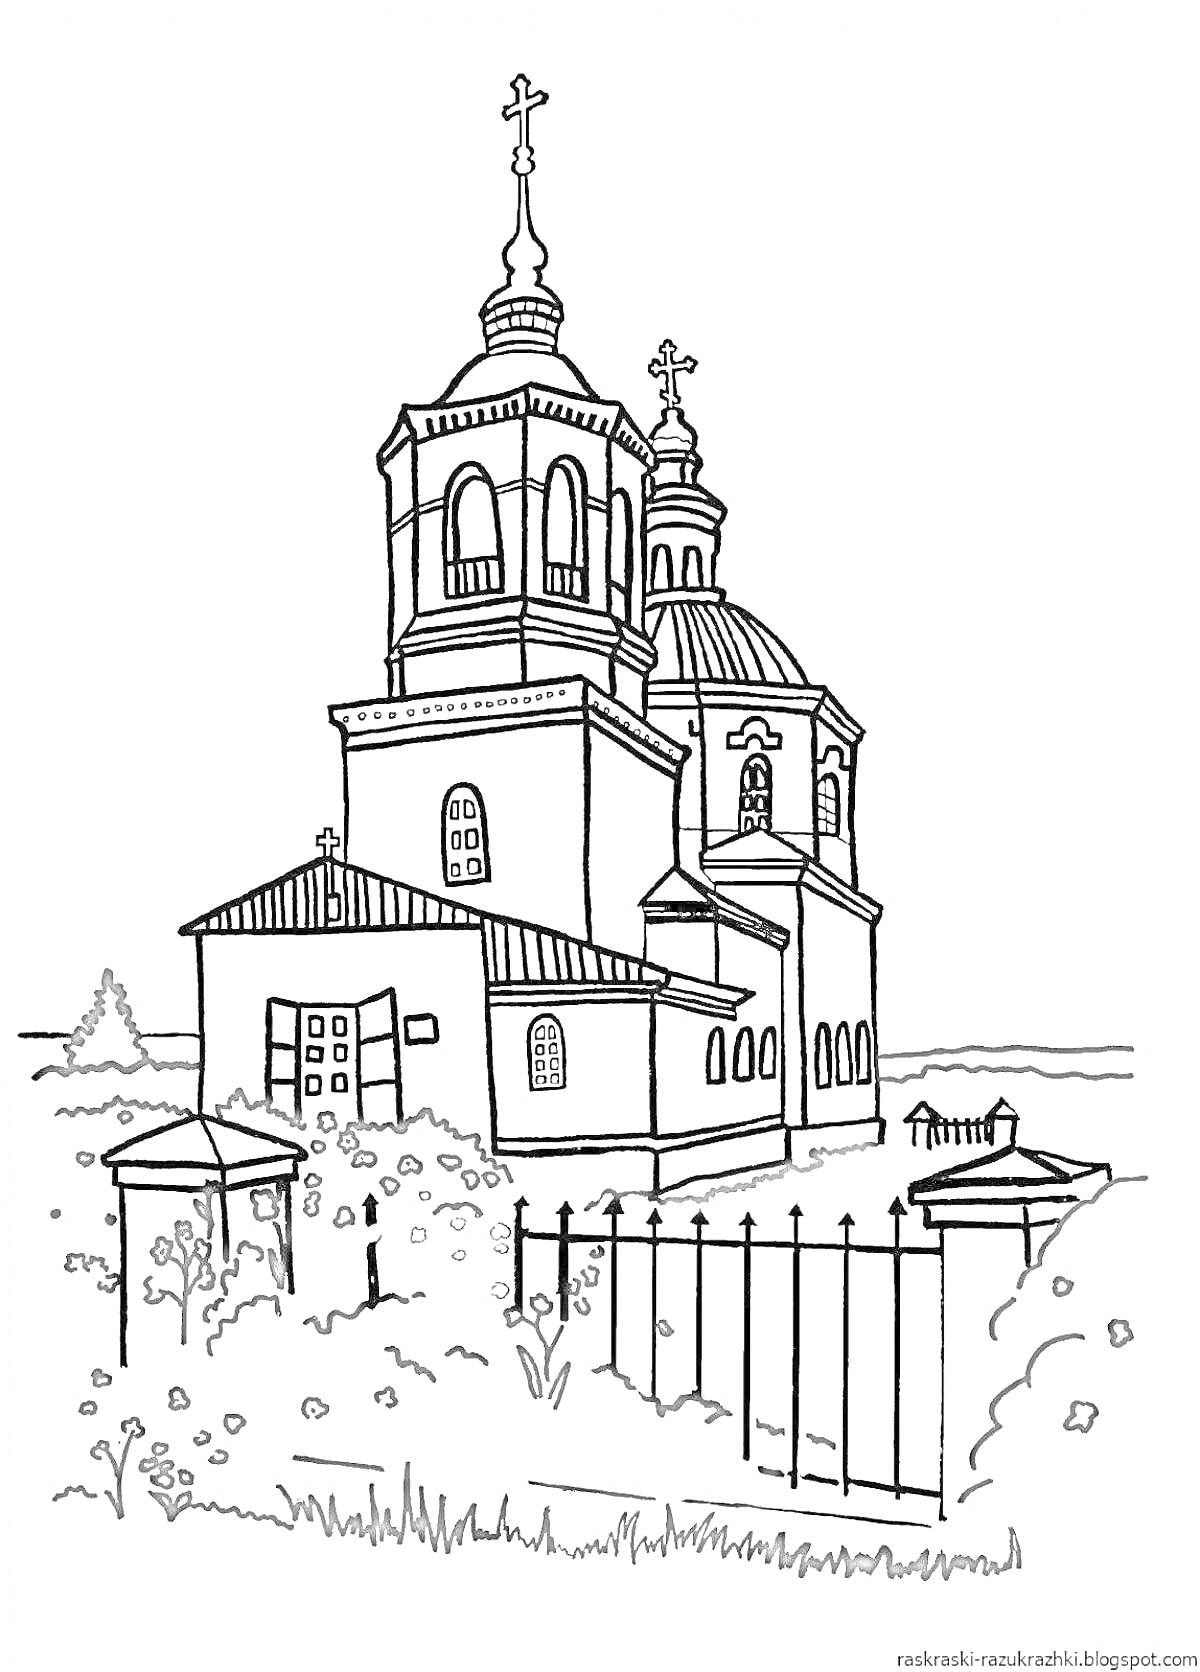 Раскраска Храм с куполами, окнами, крестами, оградой и растущими цветами